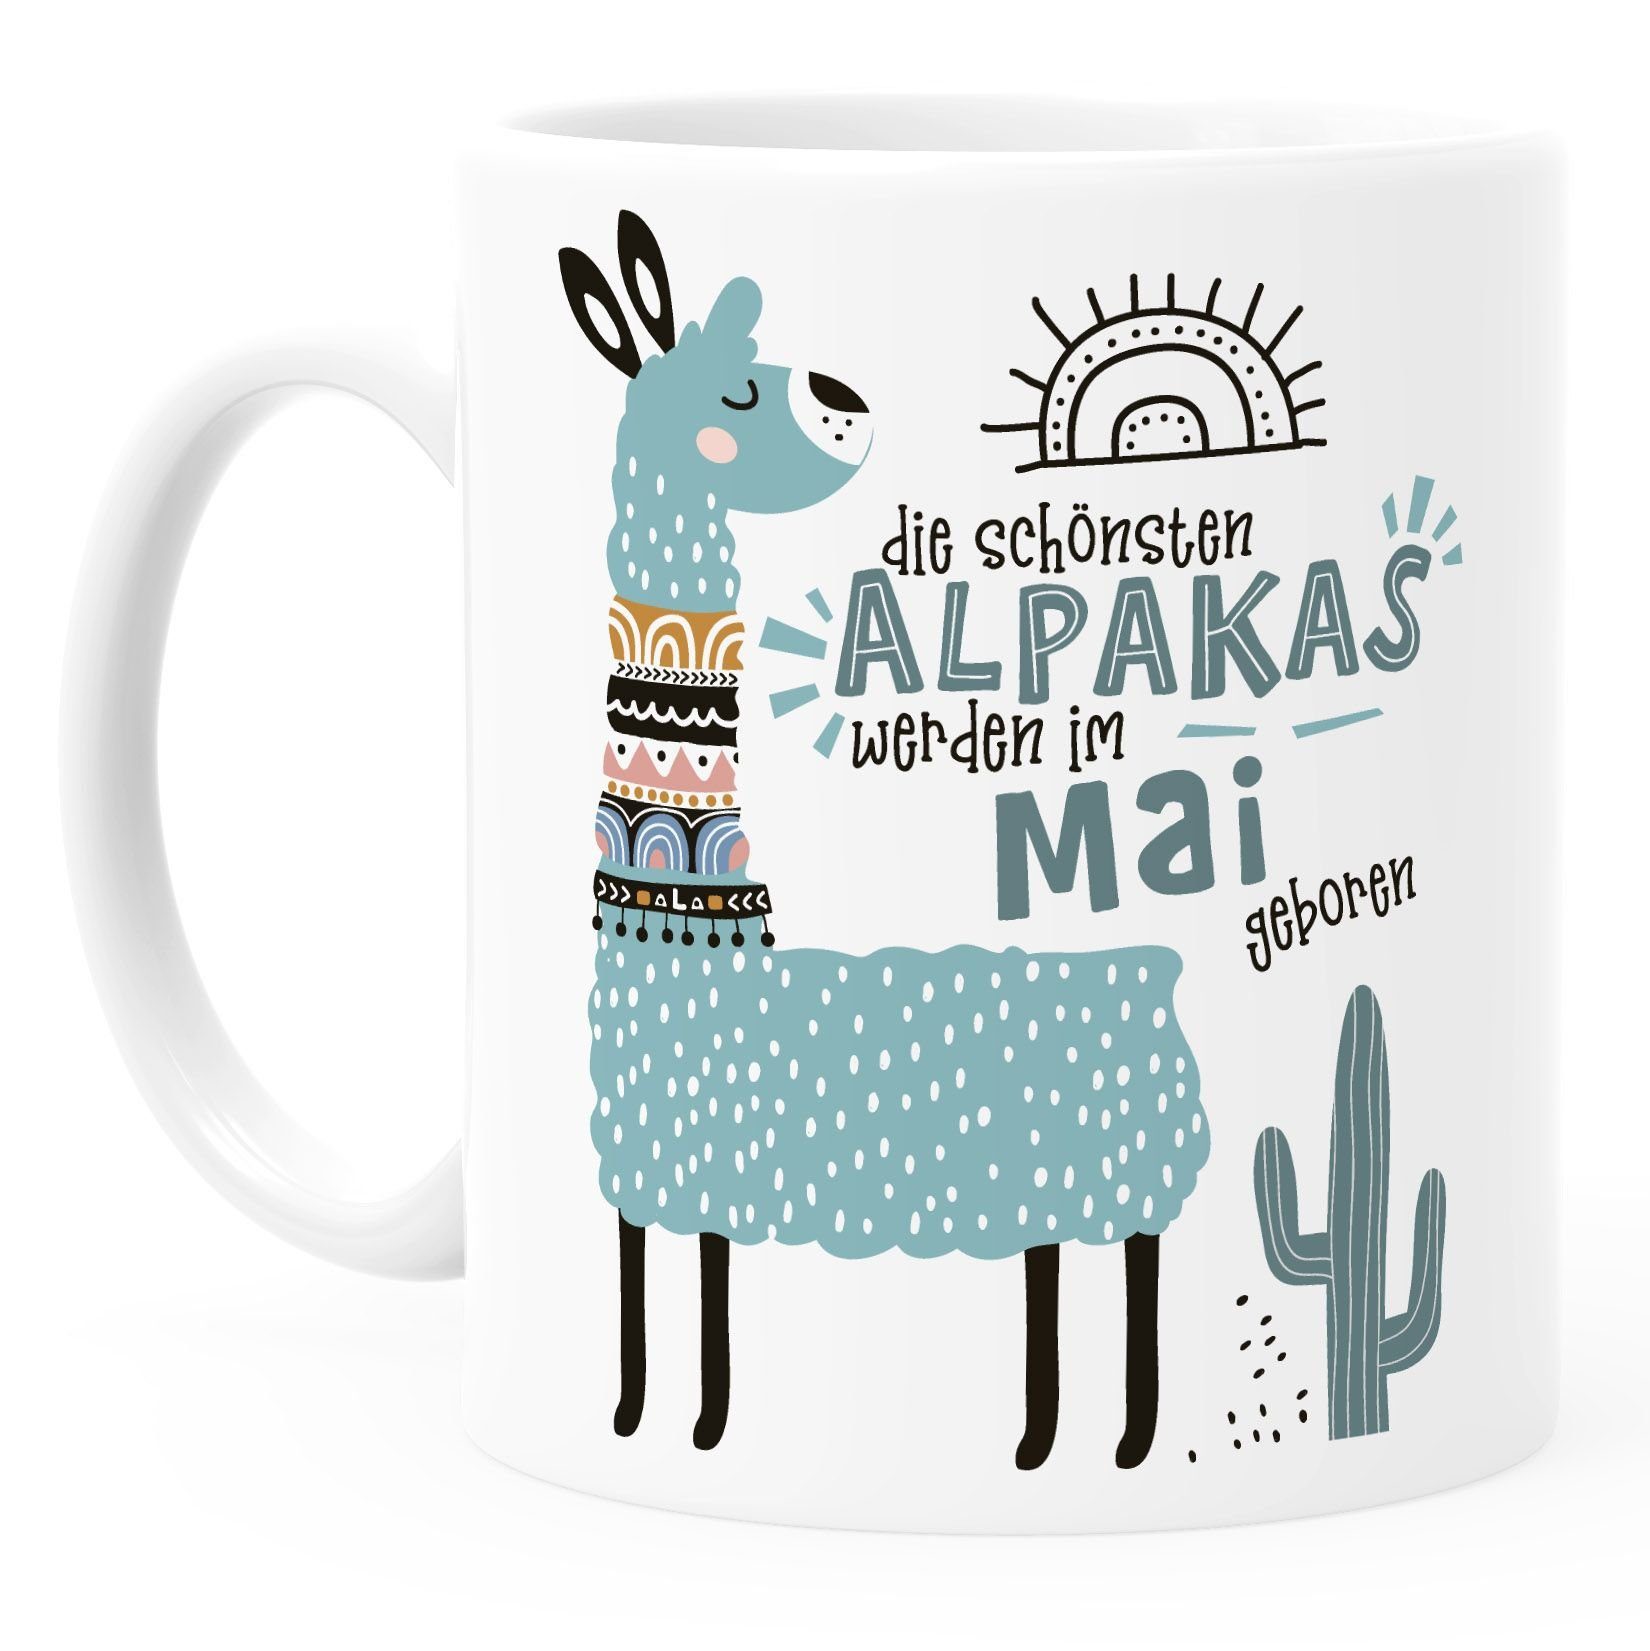 geboren SpecialMe Lama Alpakas Geburtags-Geschenke Die werden Mai Geburtsmonat Januar-Dezember individuelle weiß Kaffee-Tasse Schönsten SpecialMe®, anpassbares Motiv Tasse im Keramik